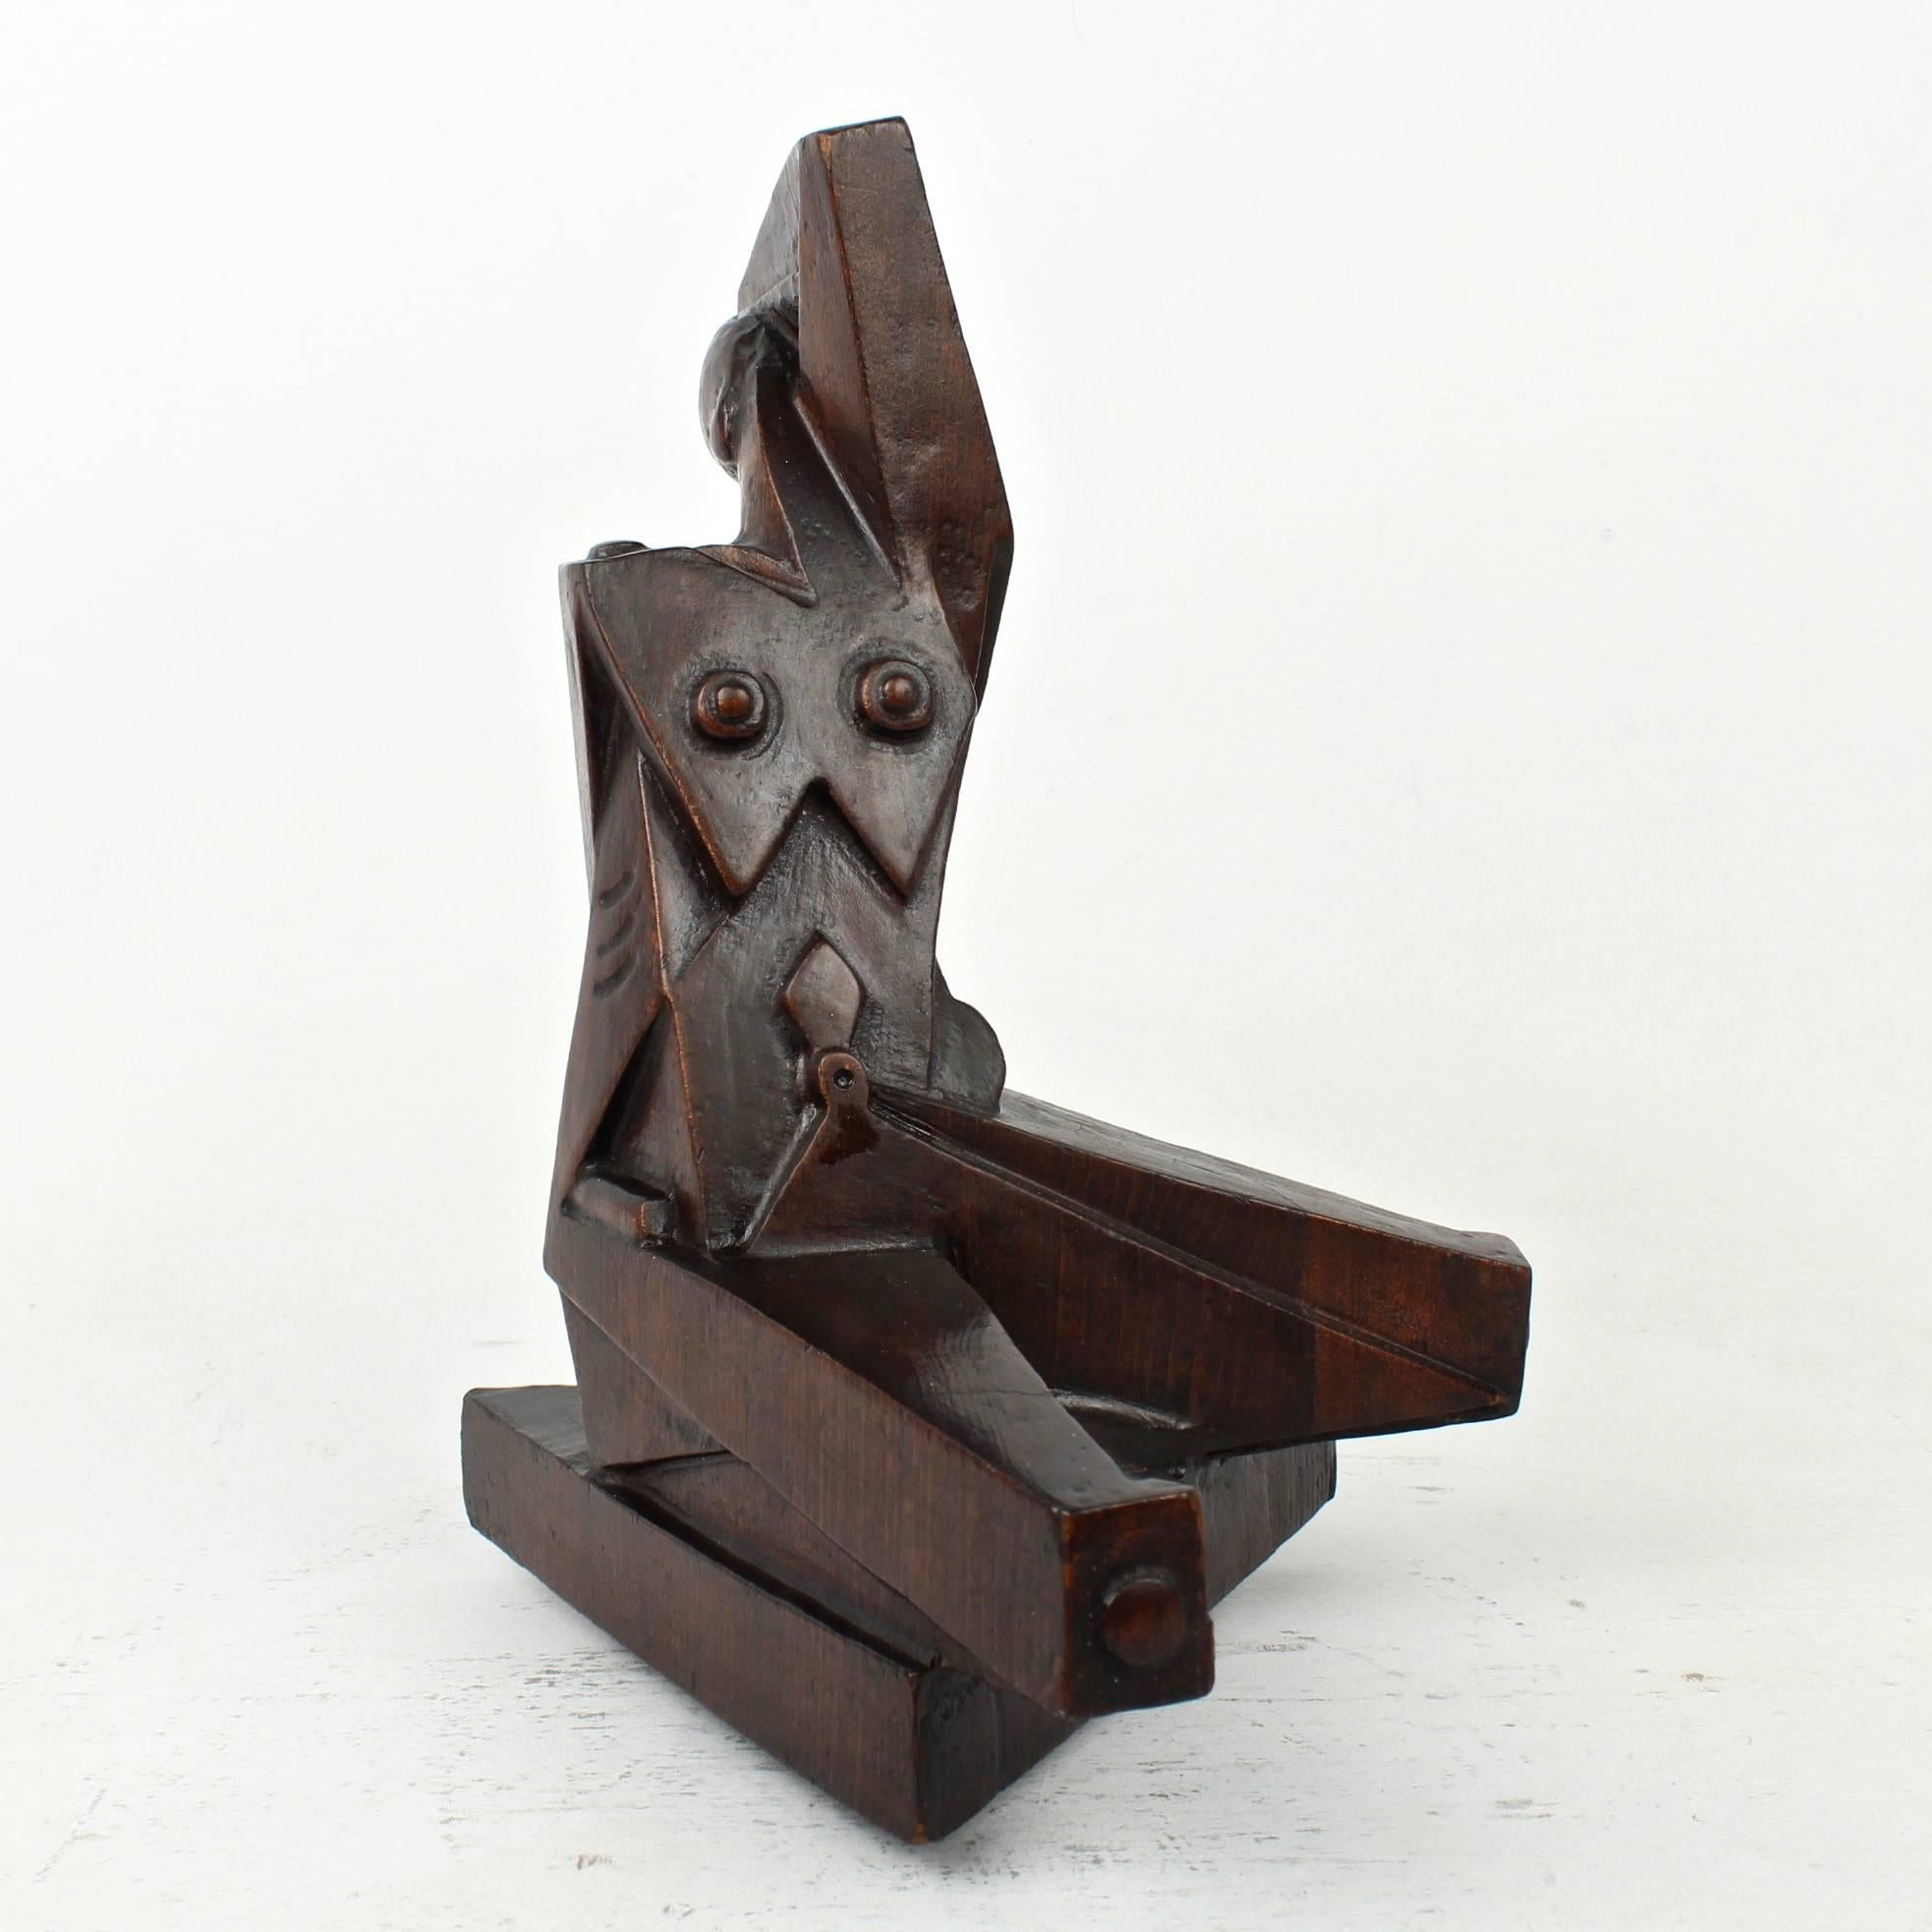 Sculpture cubiste en bois sculpté représentant une femme nue assise, réalisée par Boris Blai (1893-1985). 

Cette sculpture date probablement des années 1920-1930 (à l'époque où Blai vivait à Philadelphie).

Très probablement constitué de